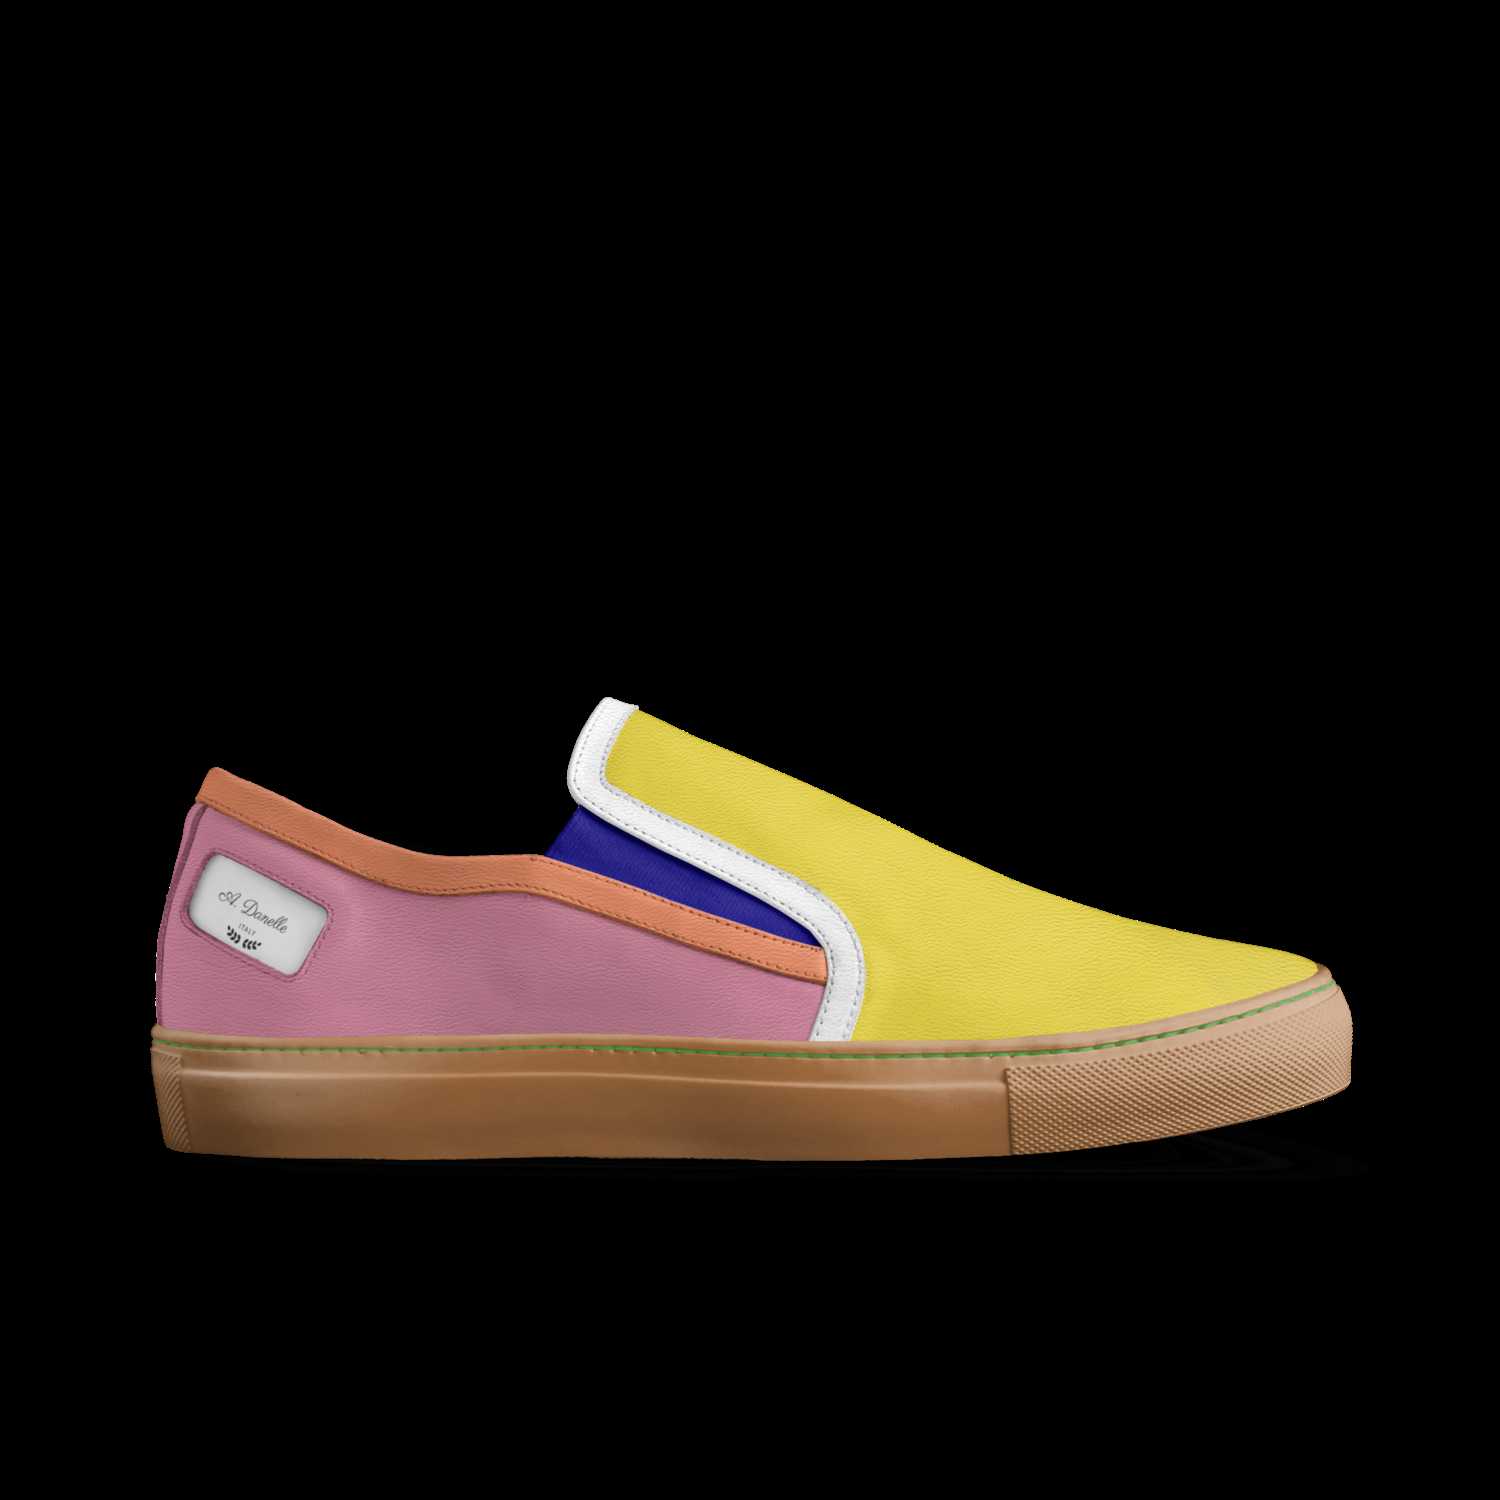 danelle shoes website